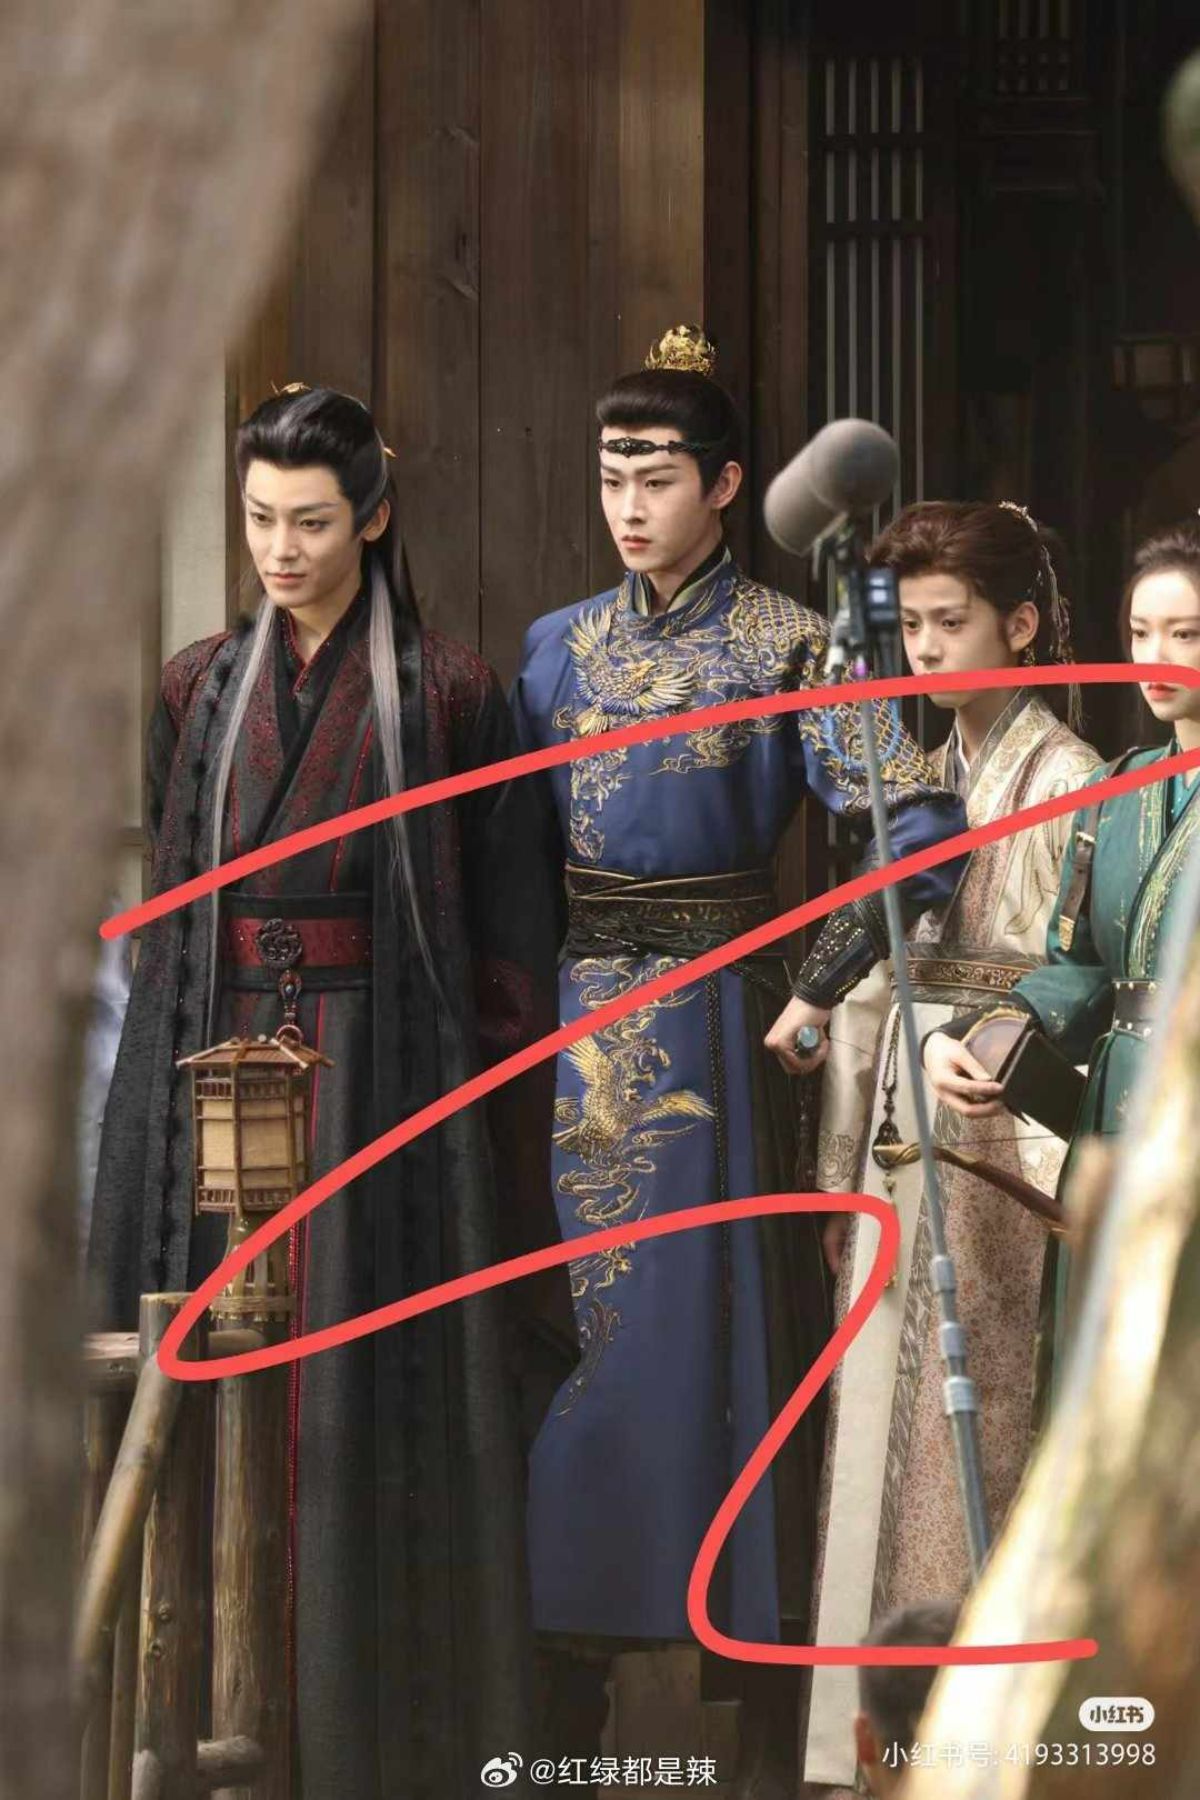 Ảnh từ trái qua phải: Hầu Minh Hạo, Điền Gia Thụy, Lâm Tử Diệp, Trình Tiêu